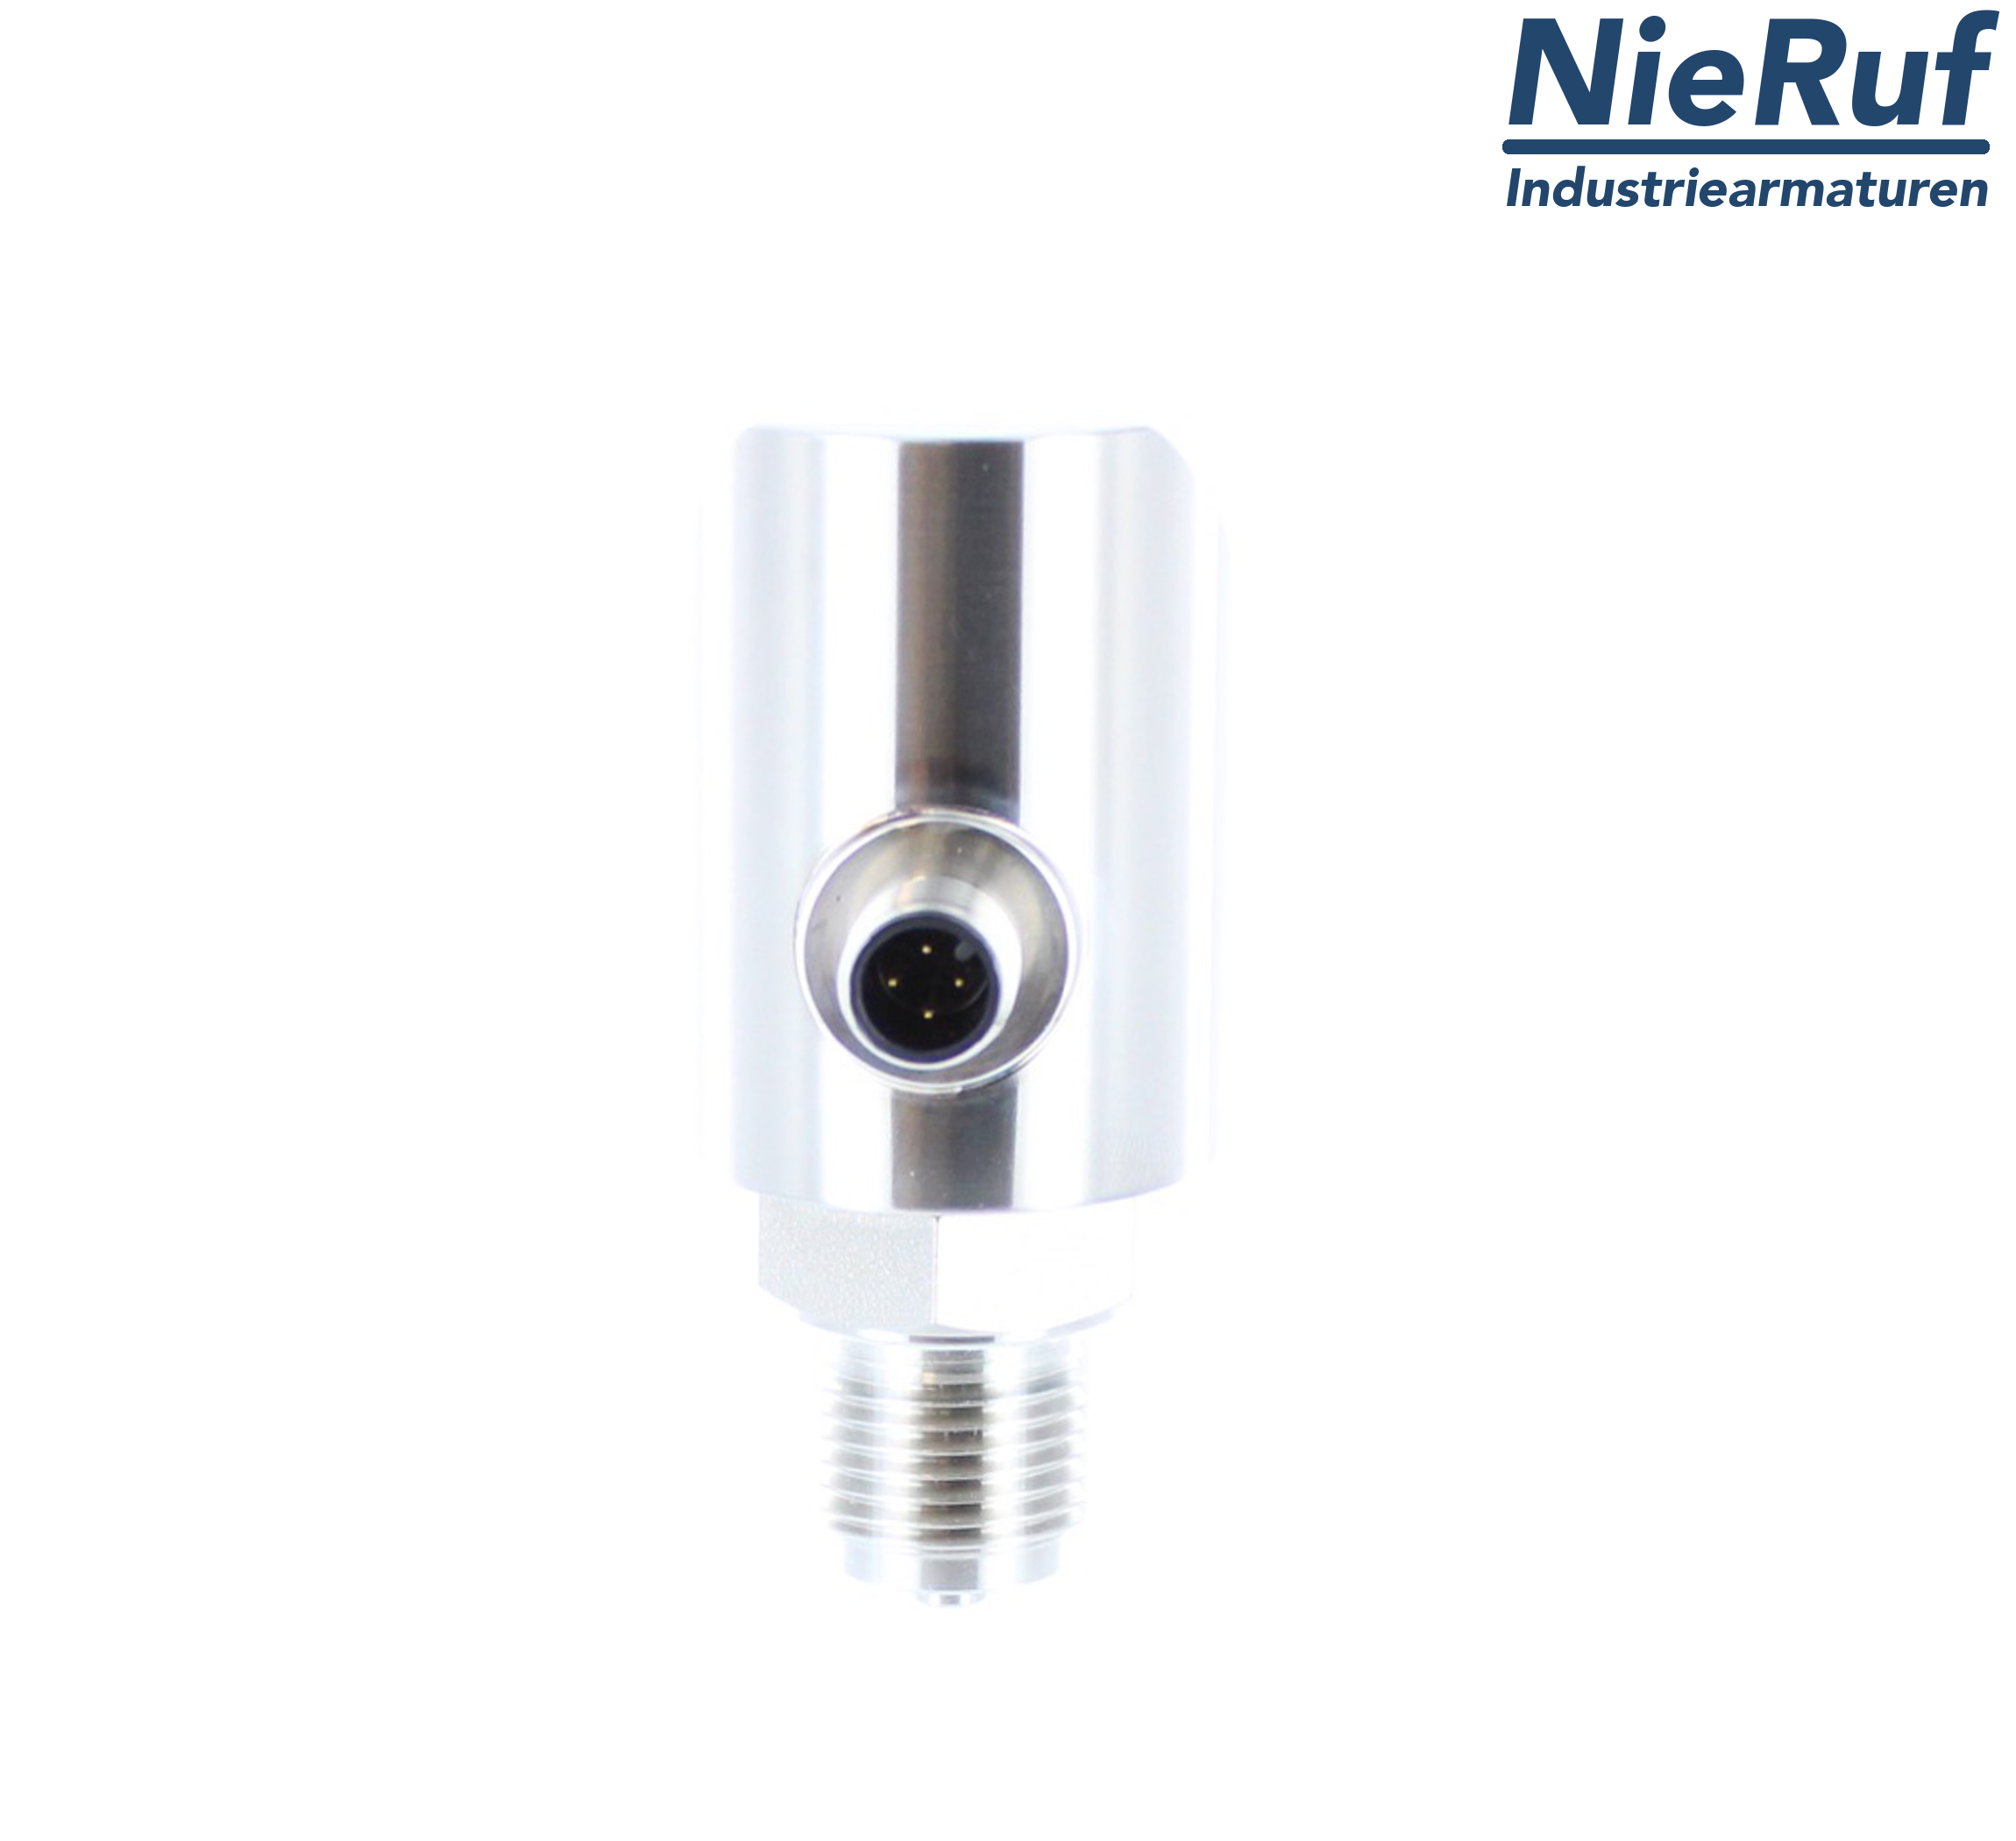 digital pressure sensor G 1/2" B IB 5-wire: 2xPNP, 1x4 - 20mA FPM 0,0 - 40,0 bar